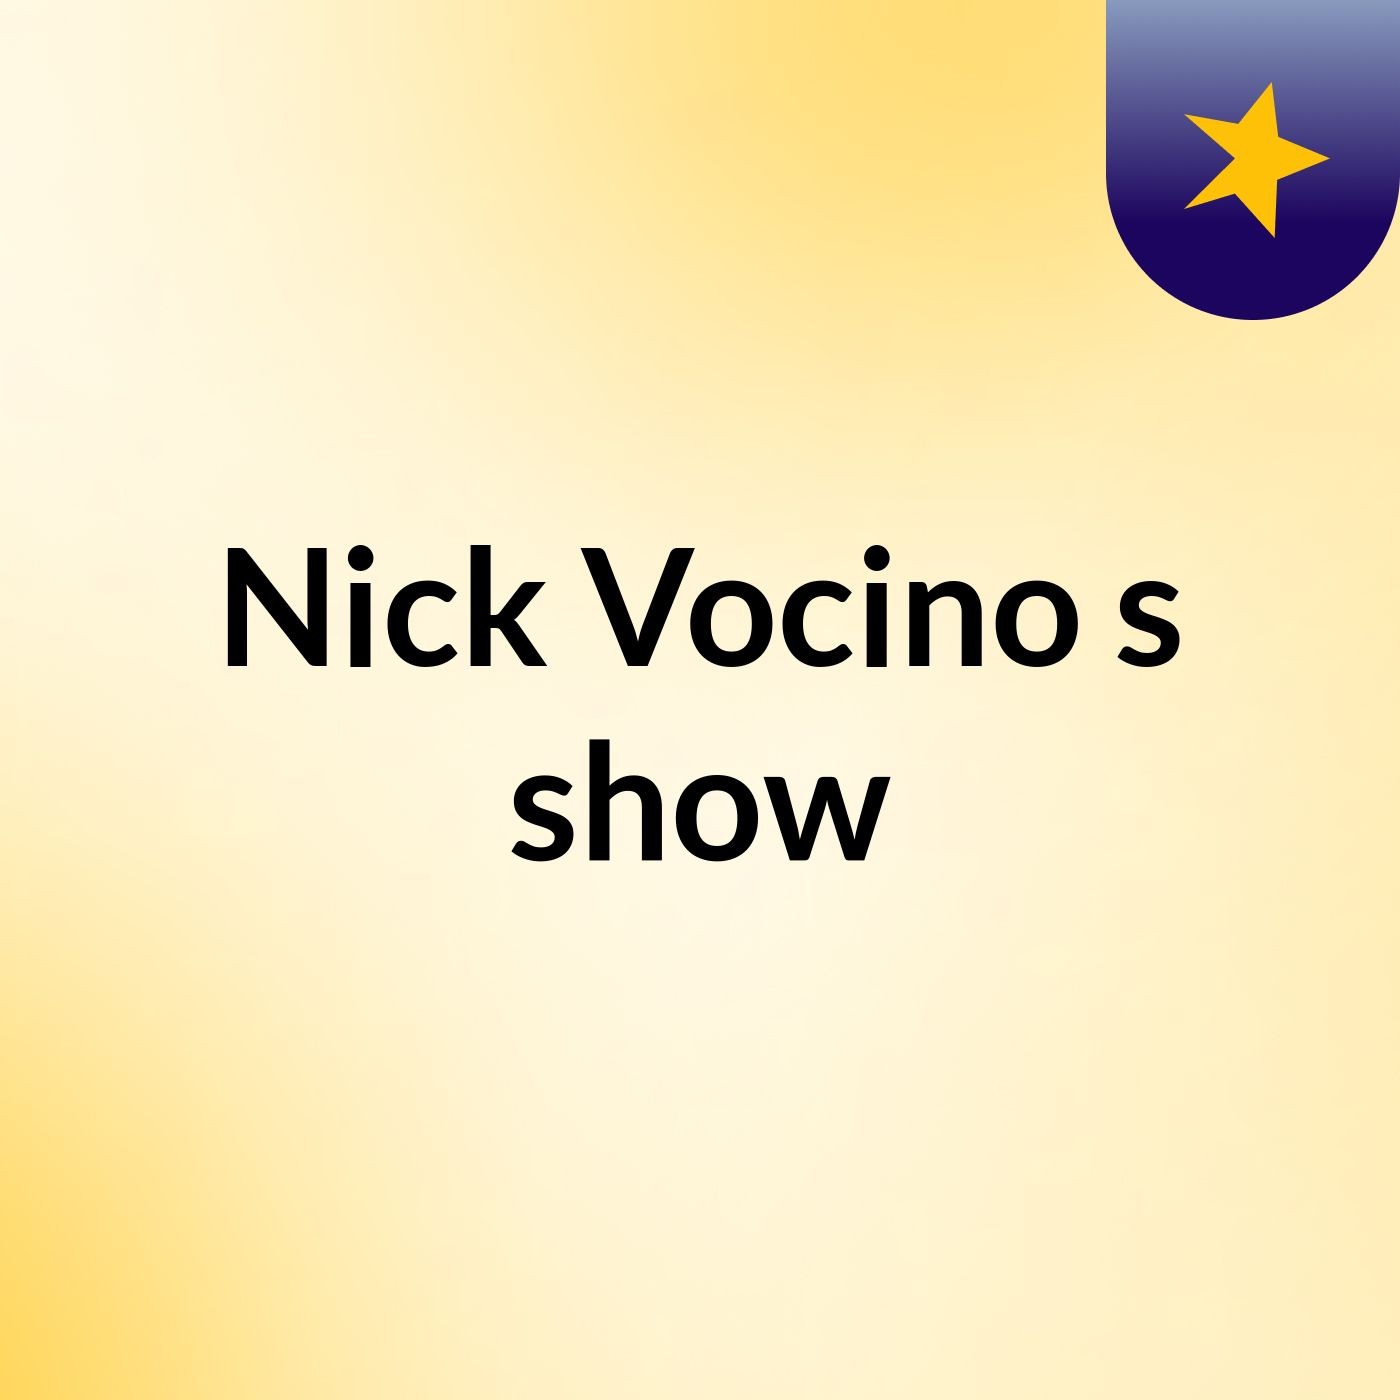 Nick Vocino's show